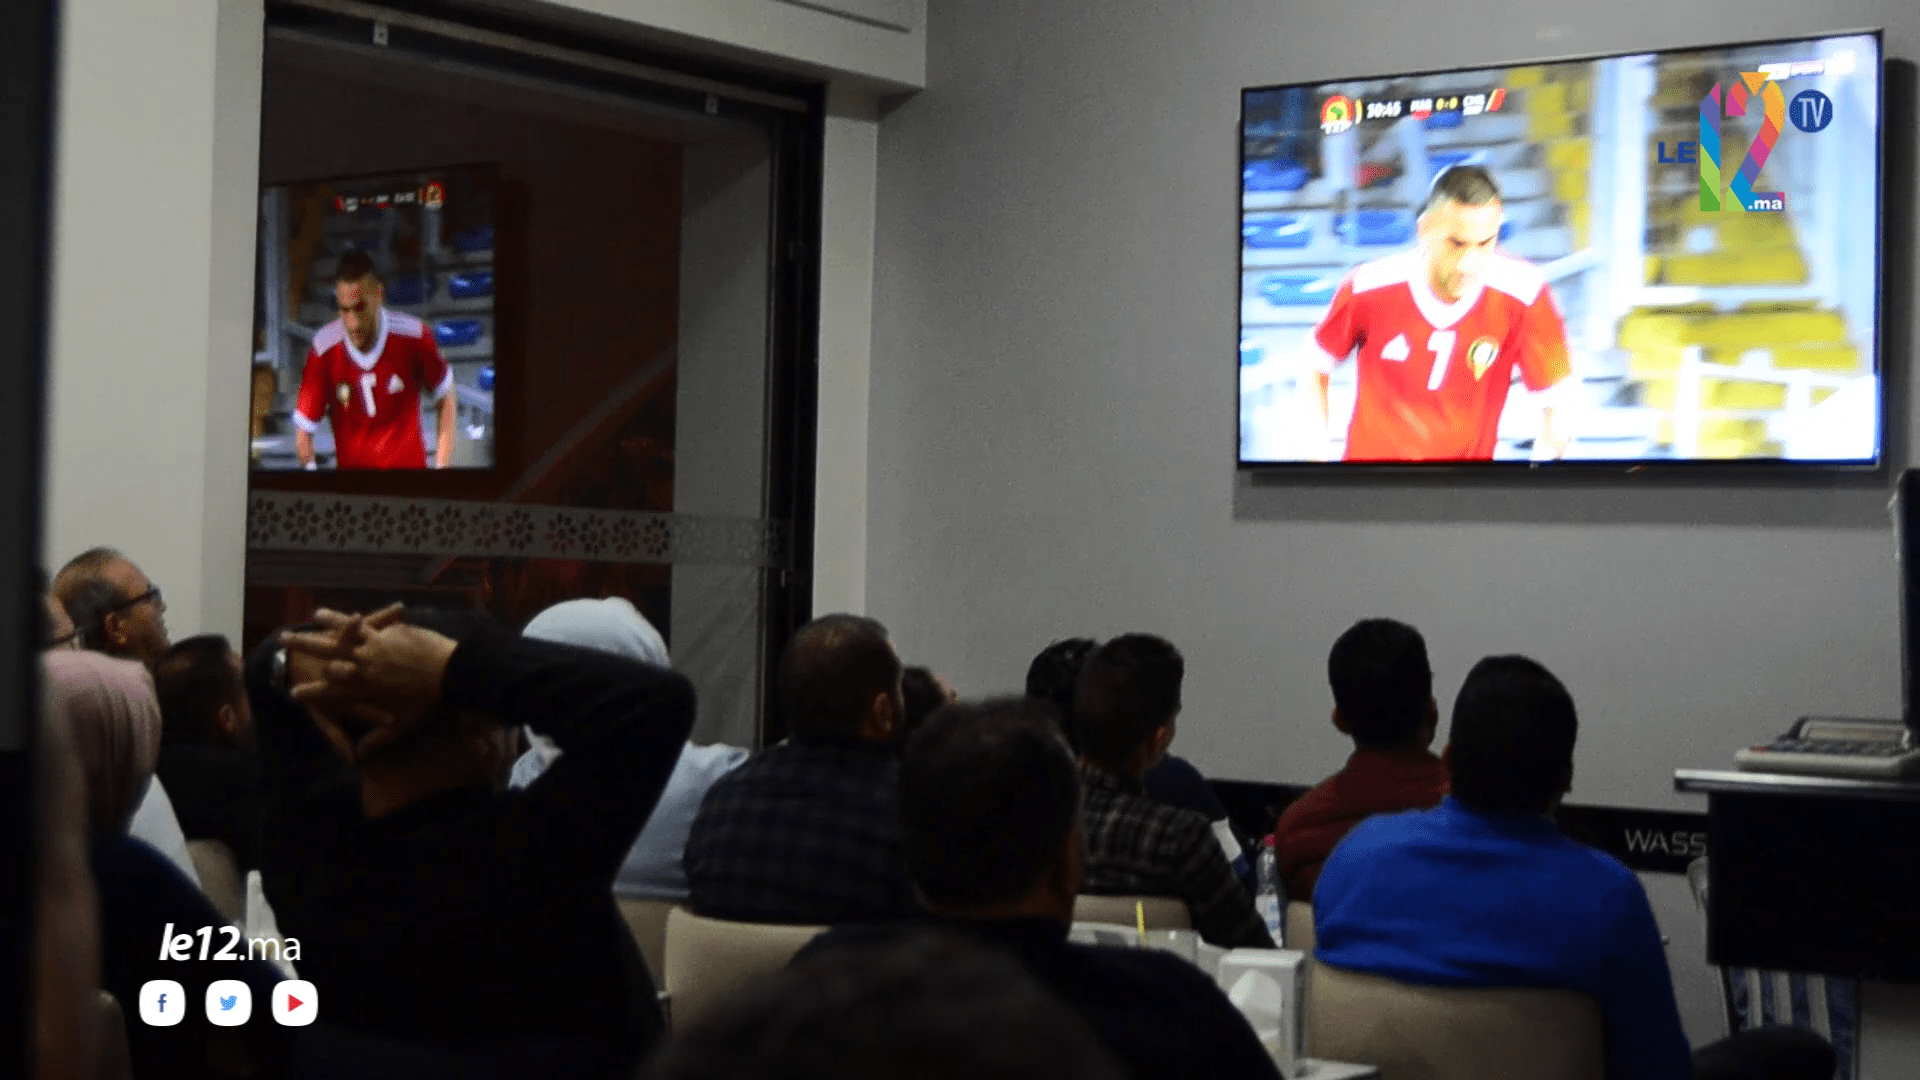 شاهد بالفيديو..حماس وفرح..أجواء حماسية من مقهى خلال مباراة المغرب و الكاميرون